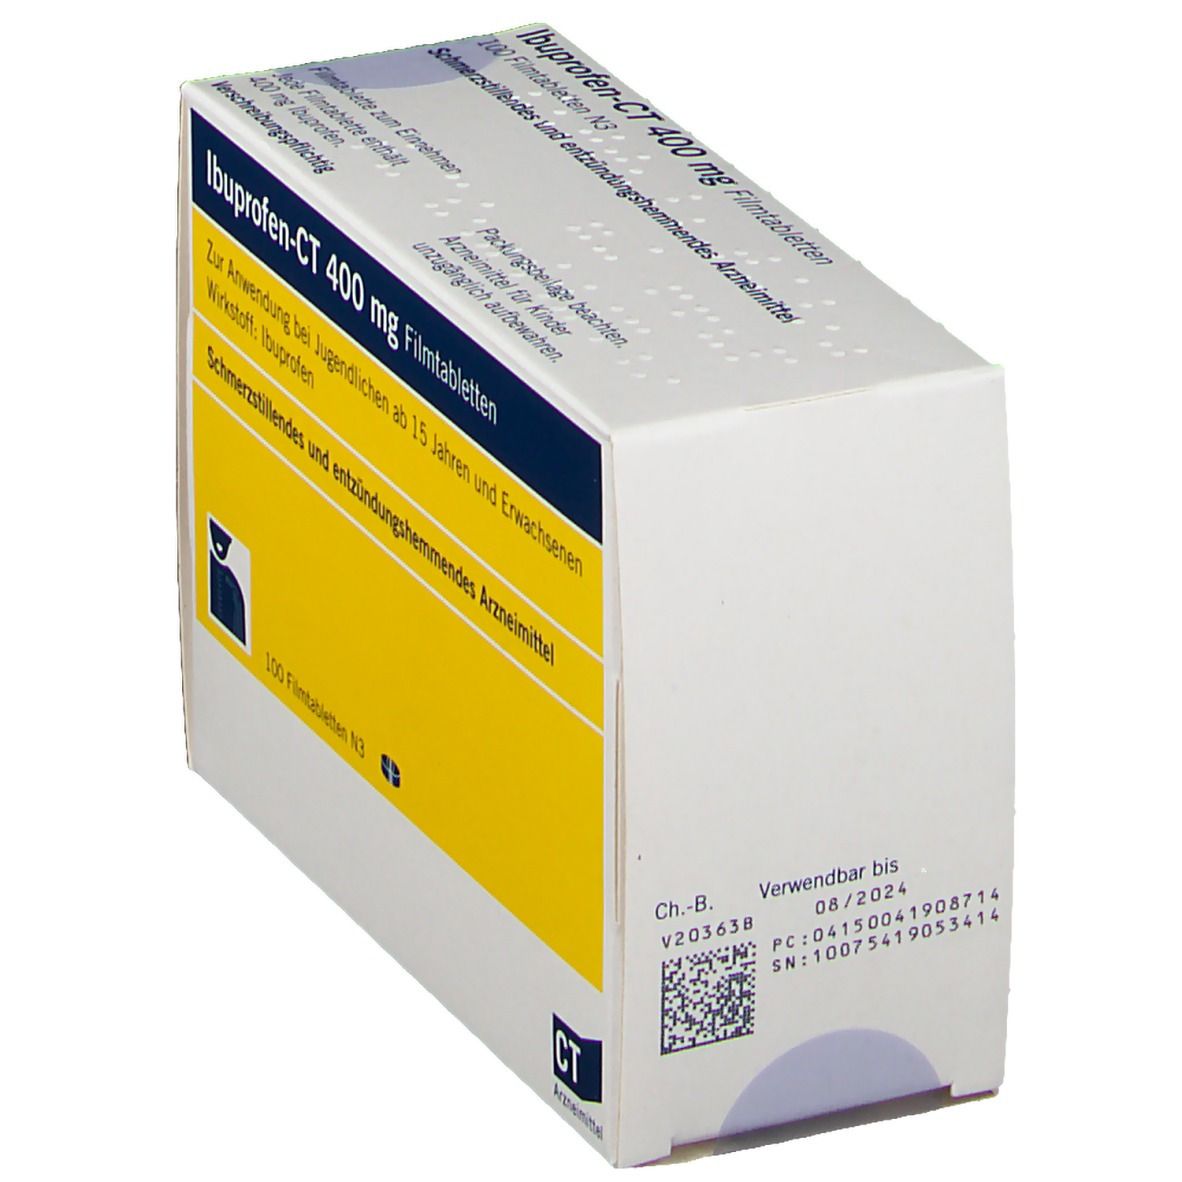 Ibuprofen - Ct 400Mg